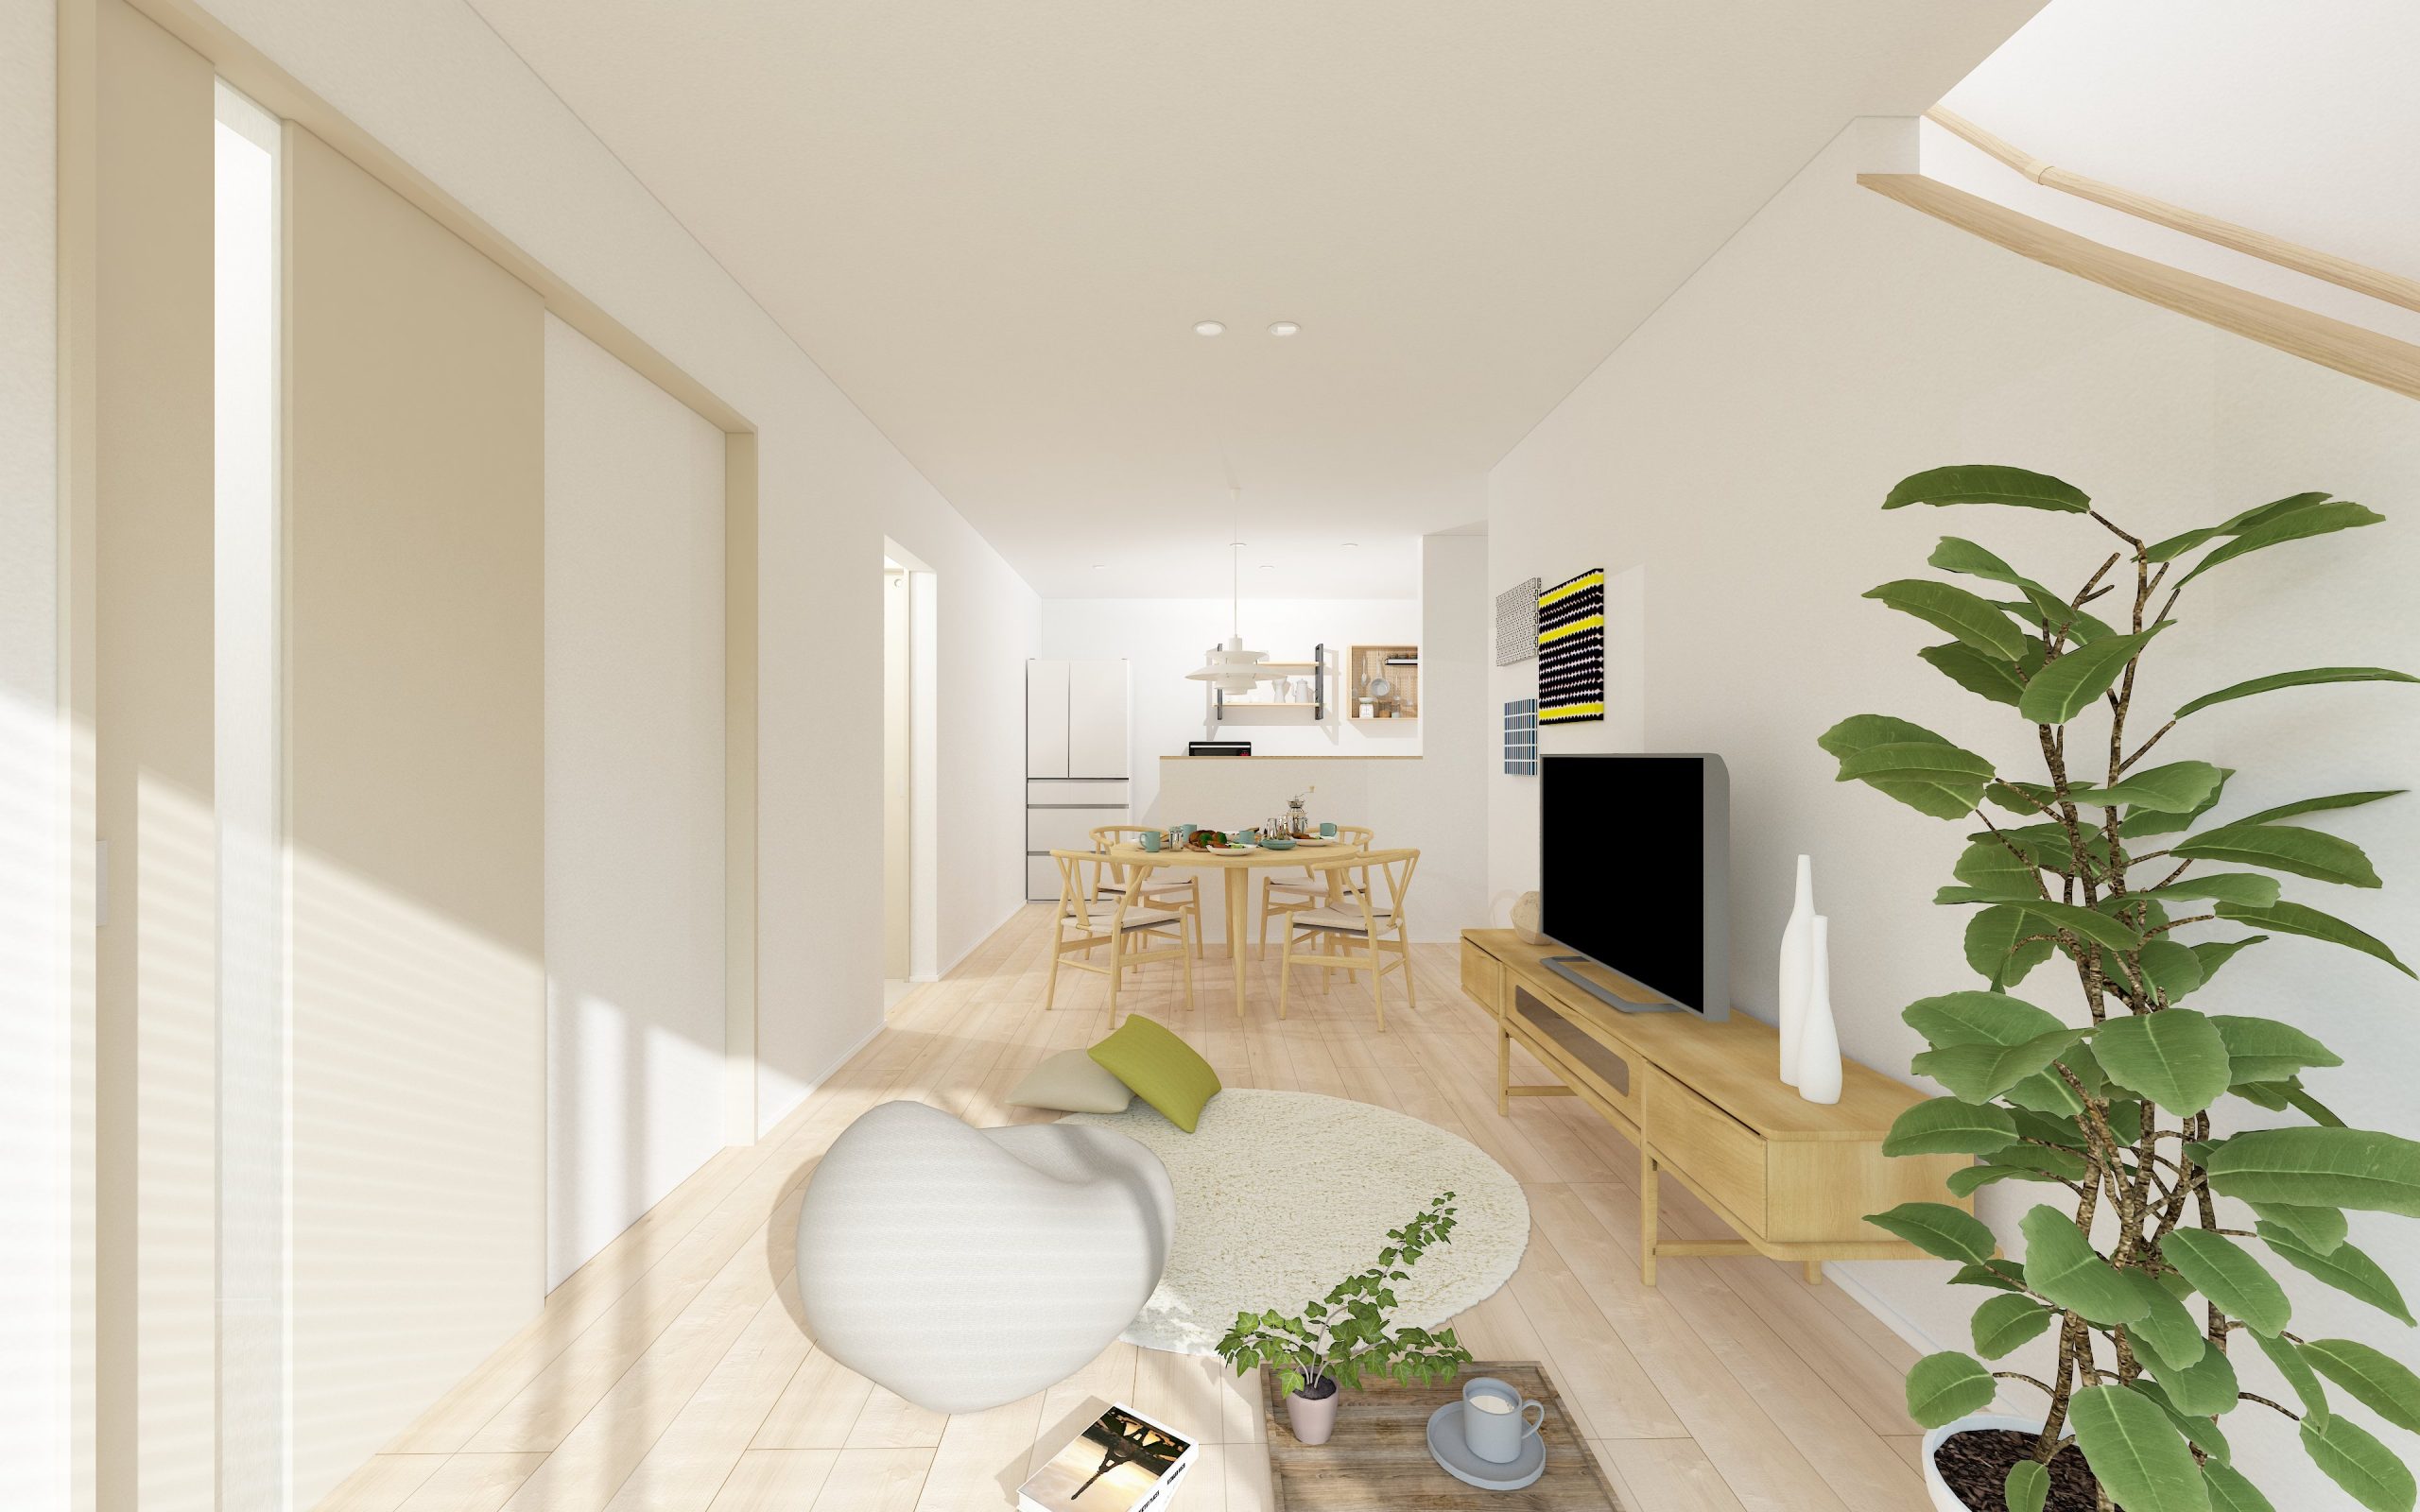 – 12月公開 -上田市中之条 住宅性能体験型モデルハウス